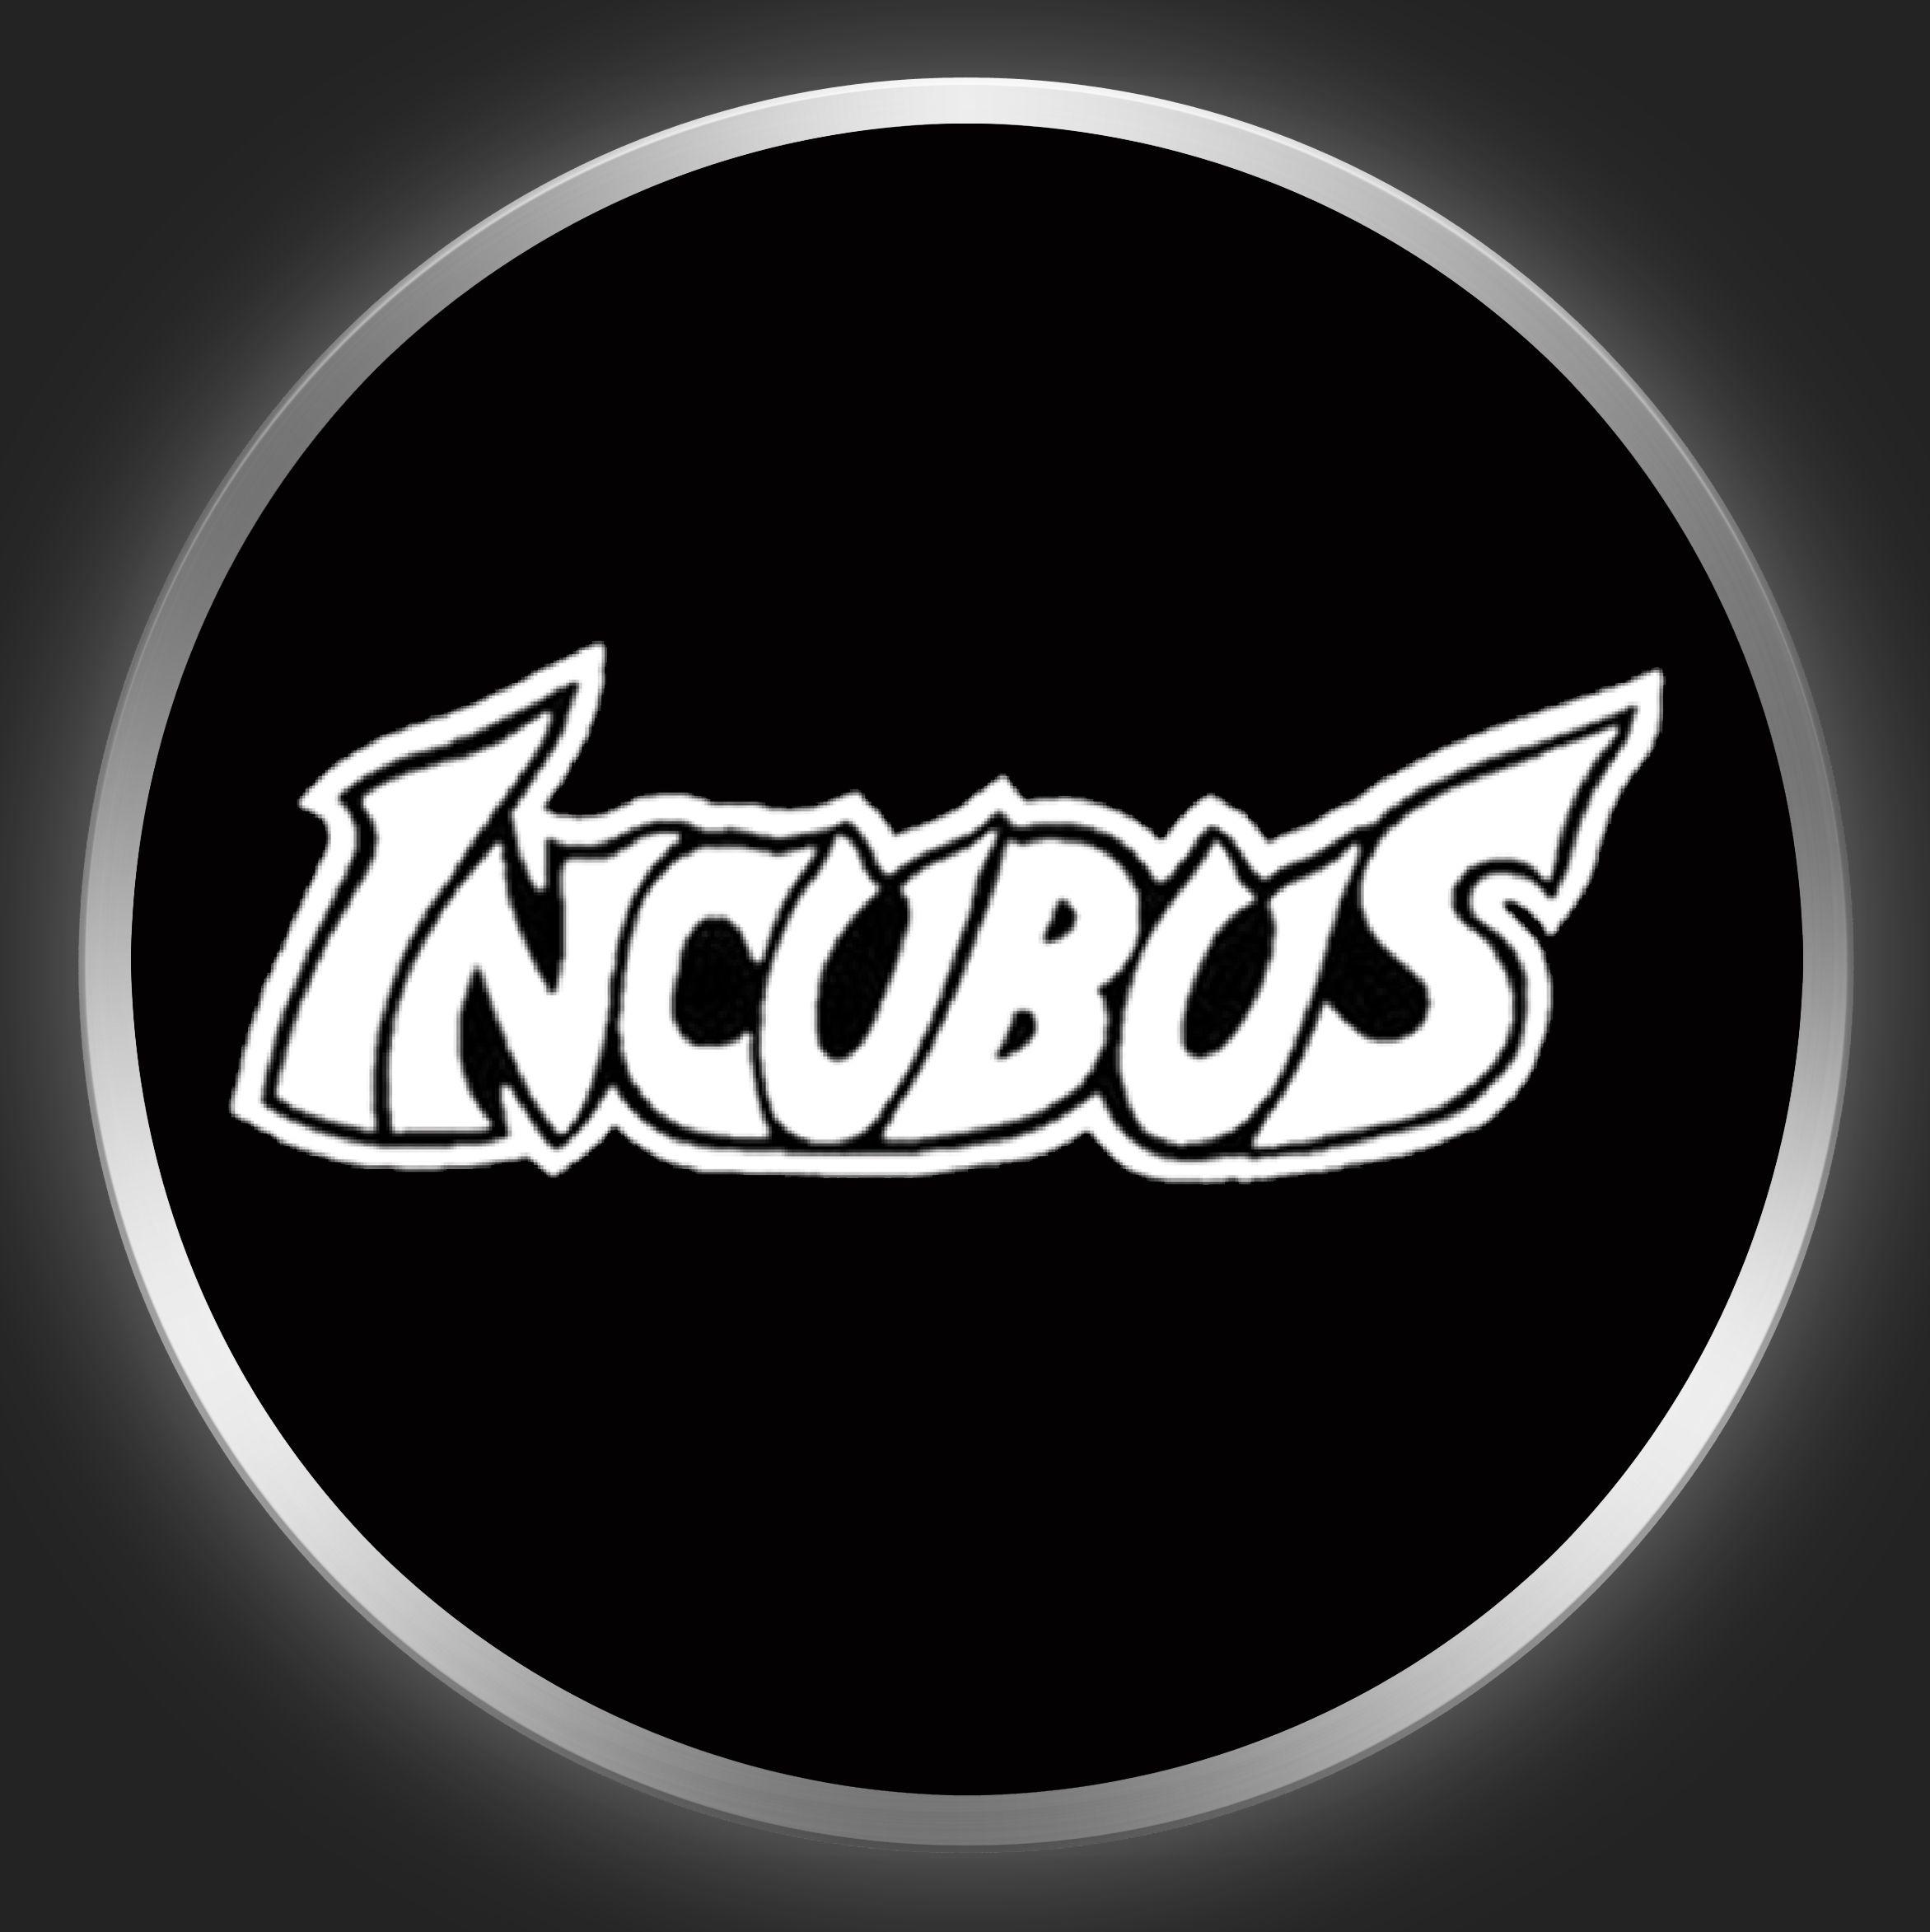 Incubus Logo - INCUBUS - White Logo On Black Button-